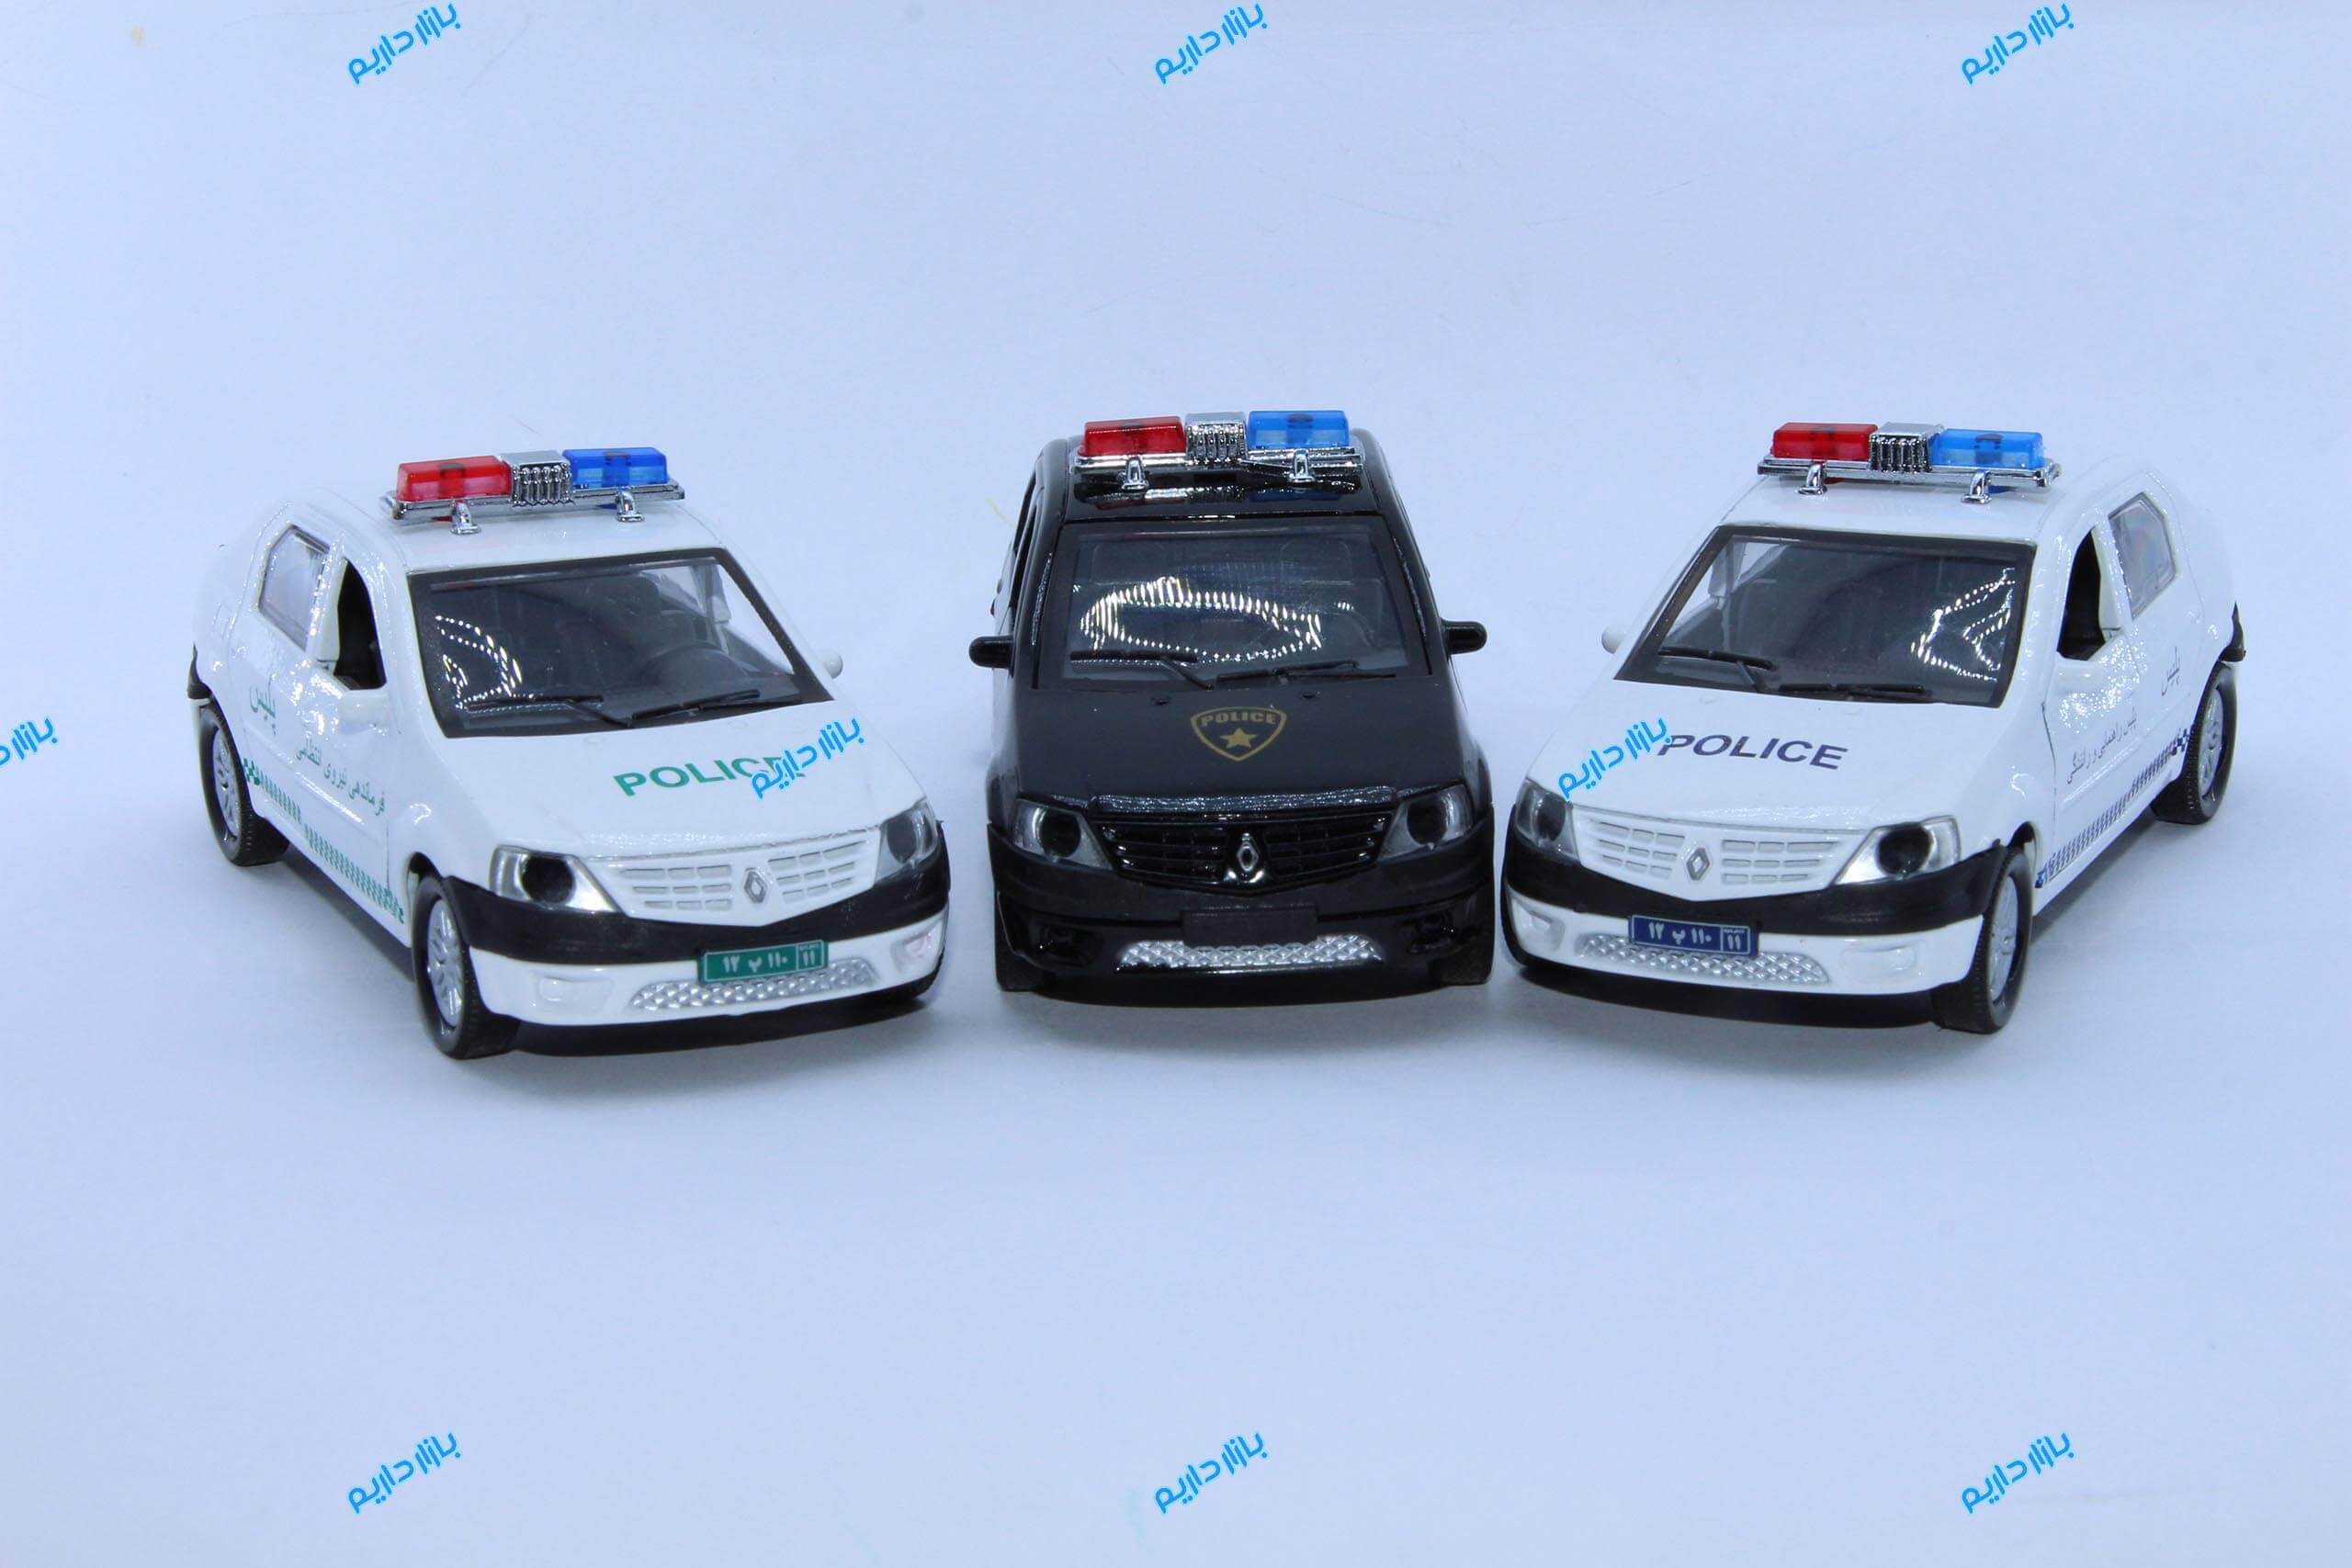 بازارداریم ماکت ماشین فلزی رنو ال نود L90 پلیس POLICE